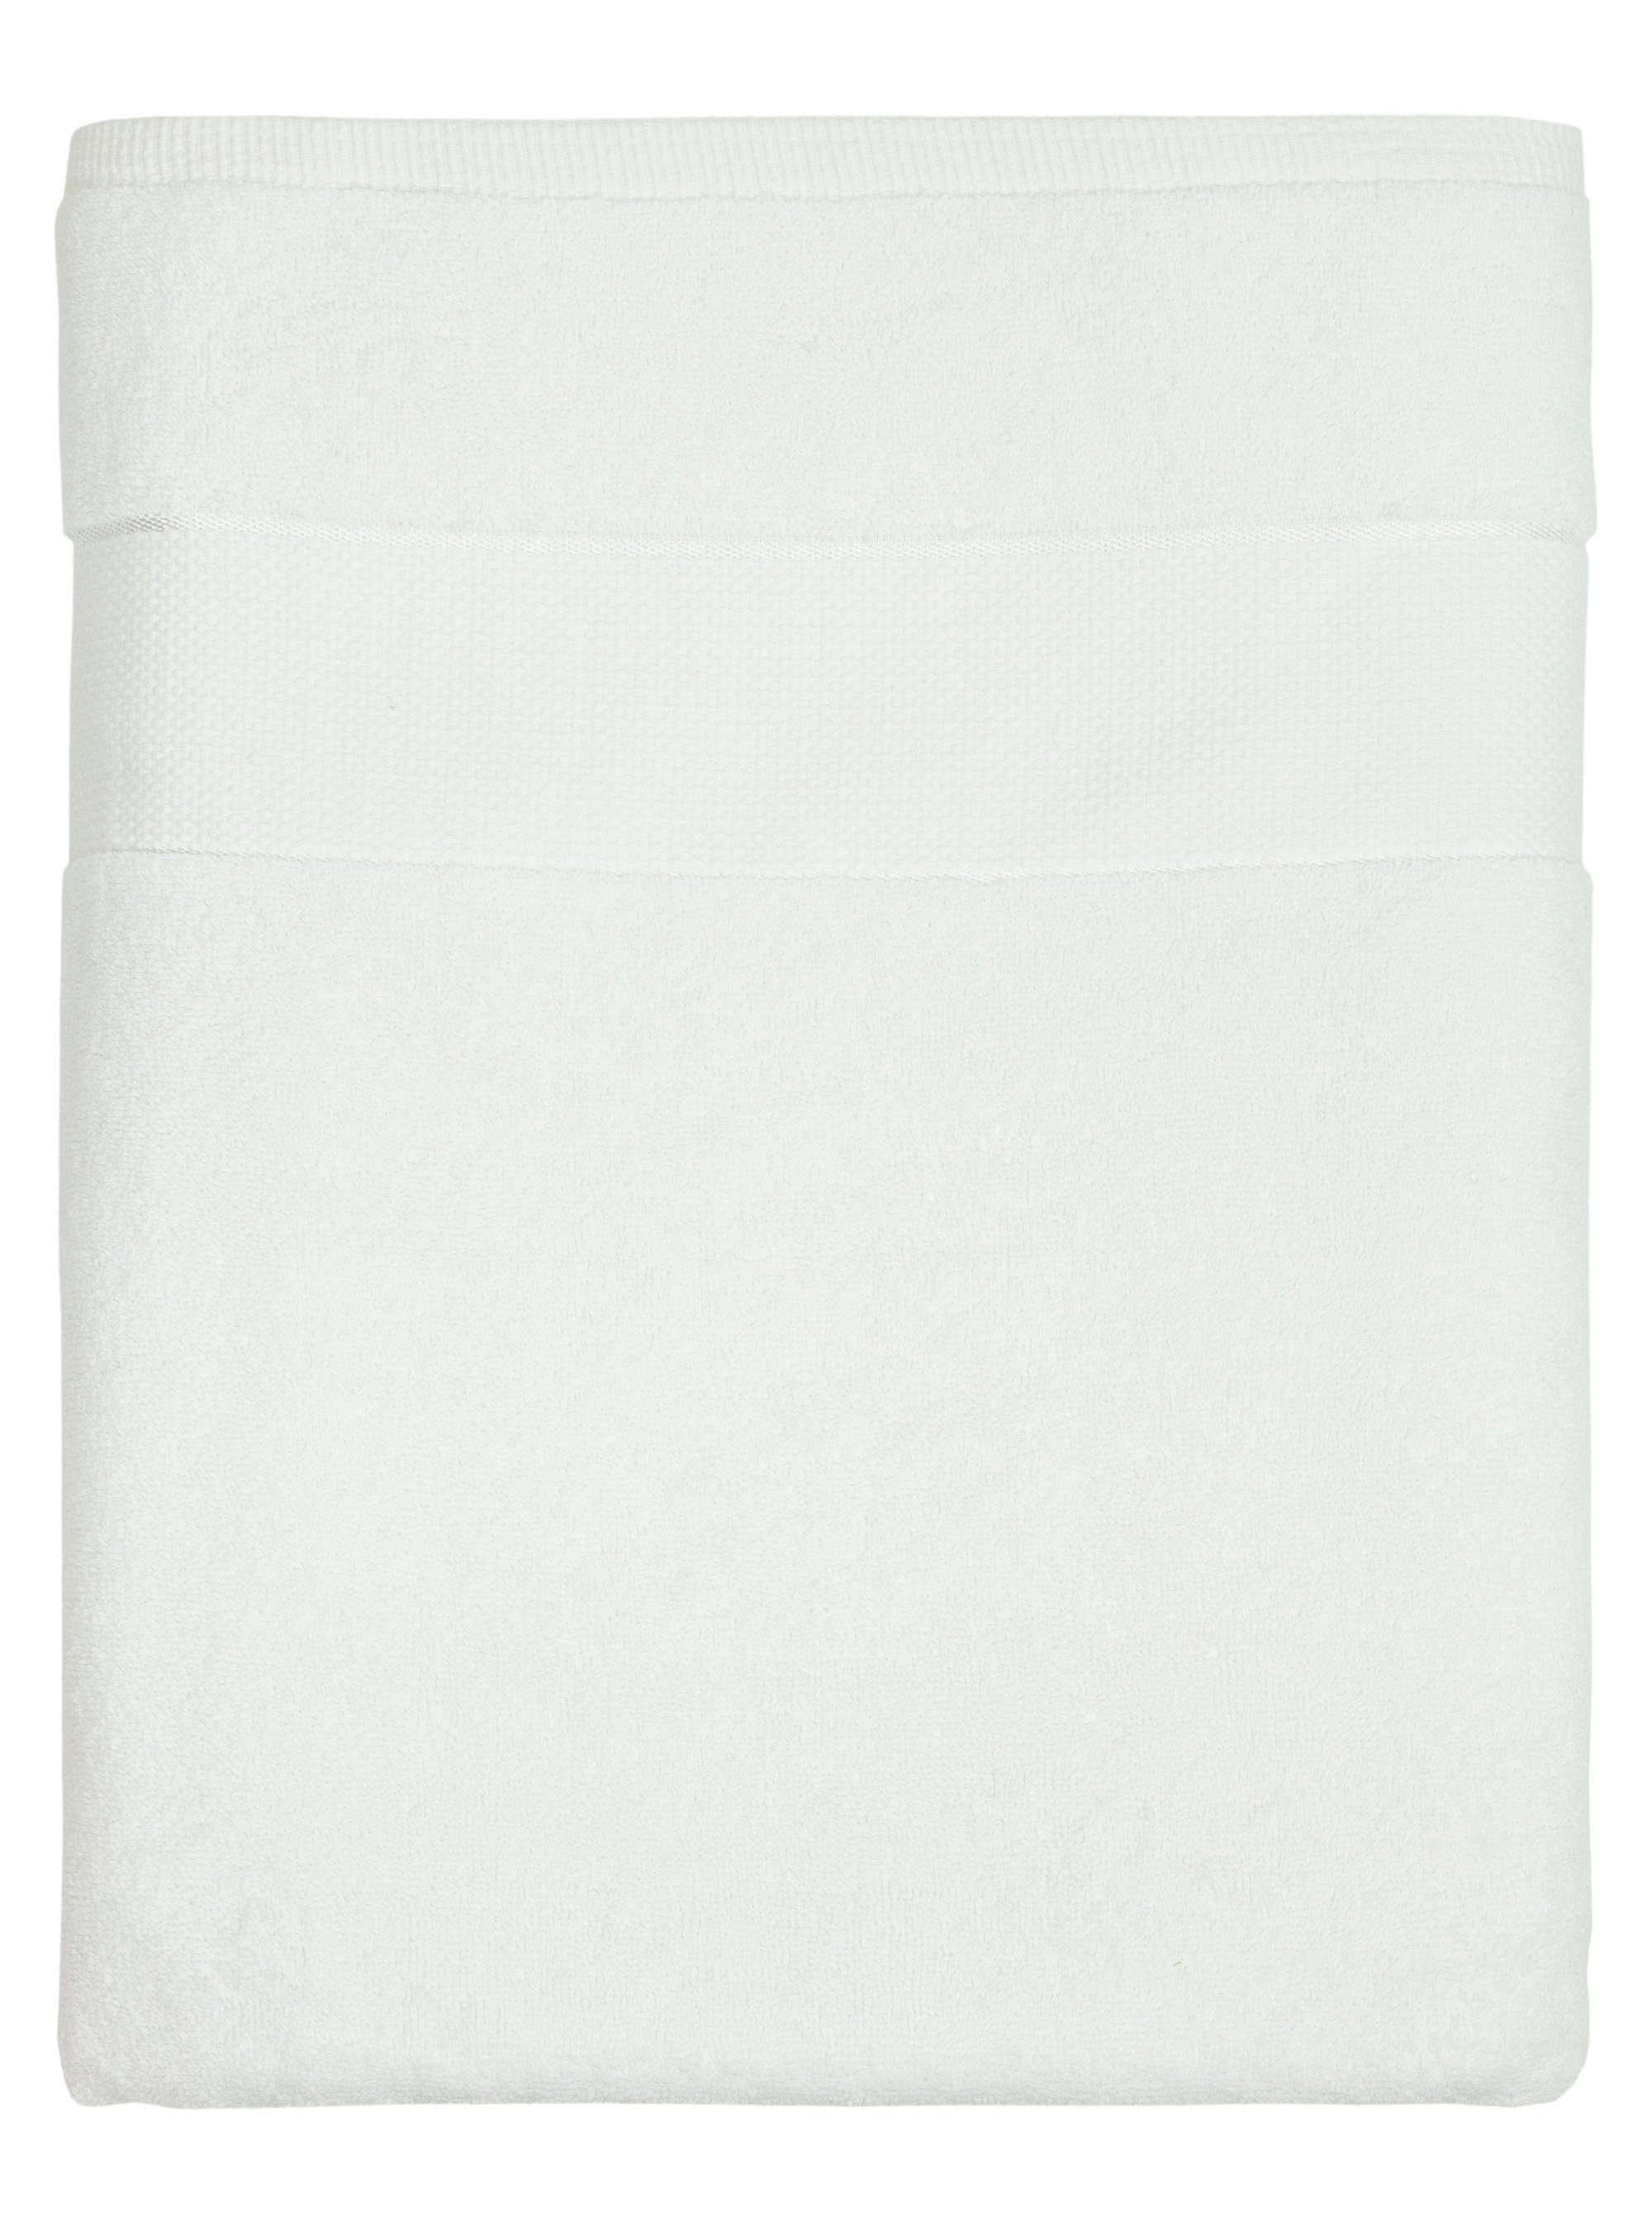 XXL - BANANALU Saunatuch Badetuch, 600g/m2 100x180cm XL Baumwolle Großes Frottiertuch White 100% (1-St) Baumwolle